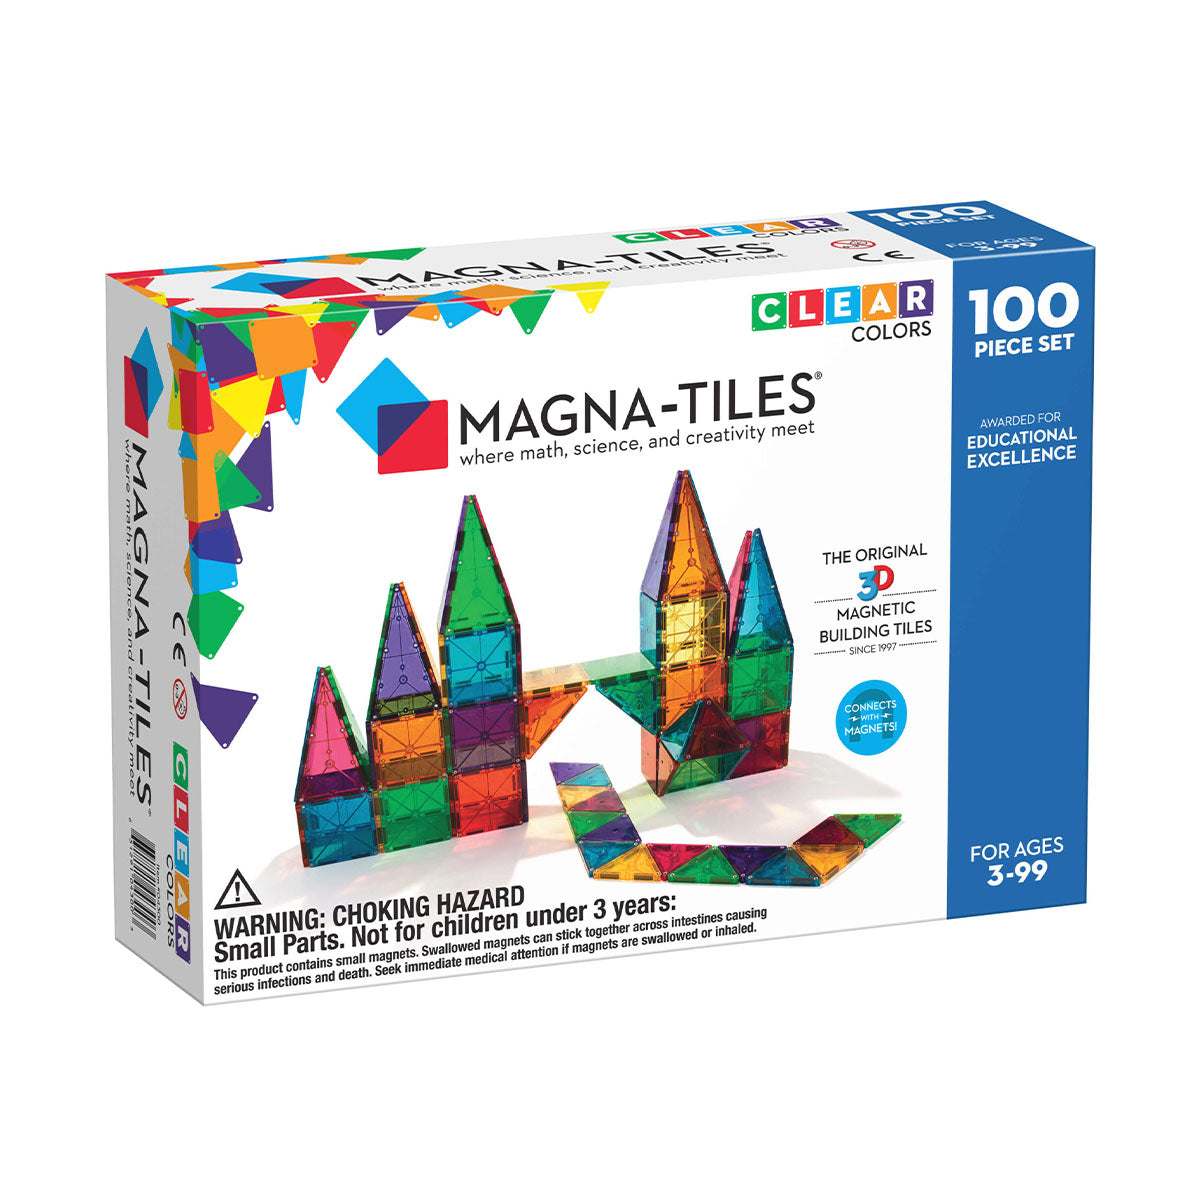 Met de Magna-Tiles Clear Colors 100 stuks is jouw kindje wel even zoet! Deze grote set heeft maar liefst 100 magnetische bouwstenen. Jouw kindje kan zijn creativiteit helemaal kwijt en maken wat hij maar wil. Leuk en leerzaam magneetspeelgoed. VanZus.